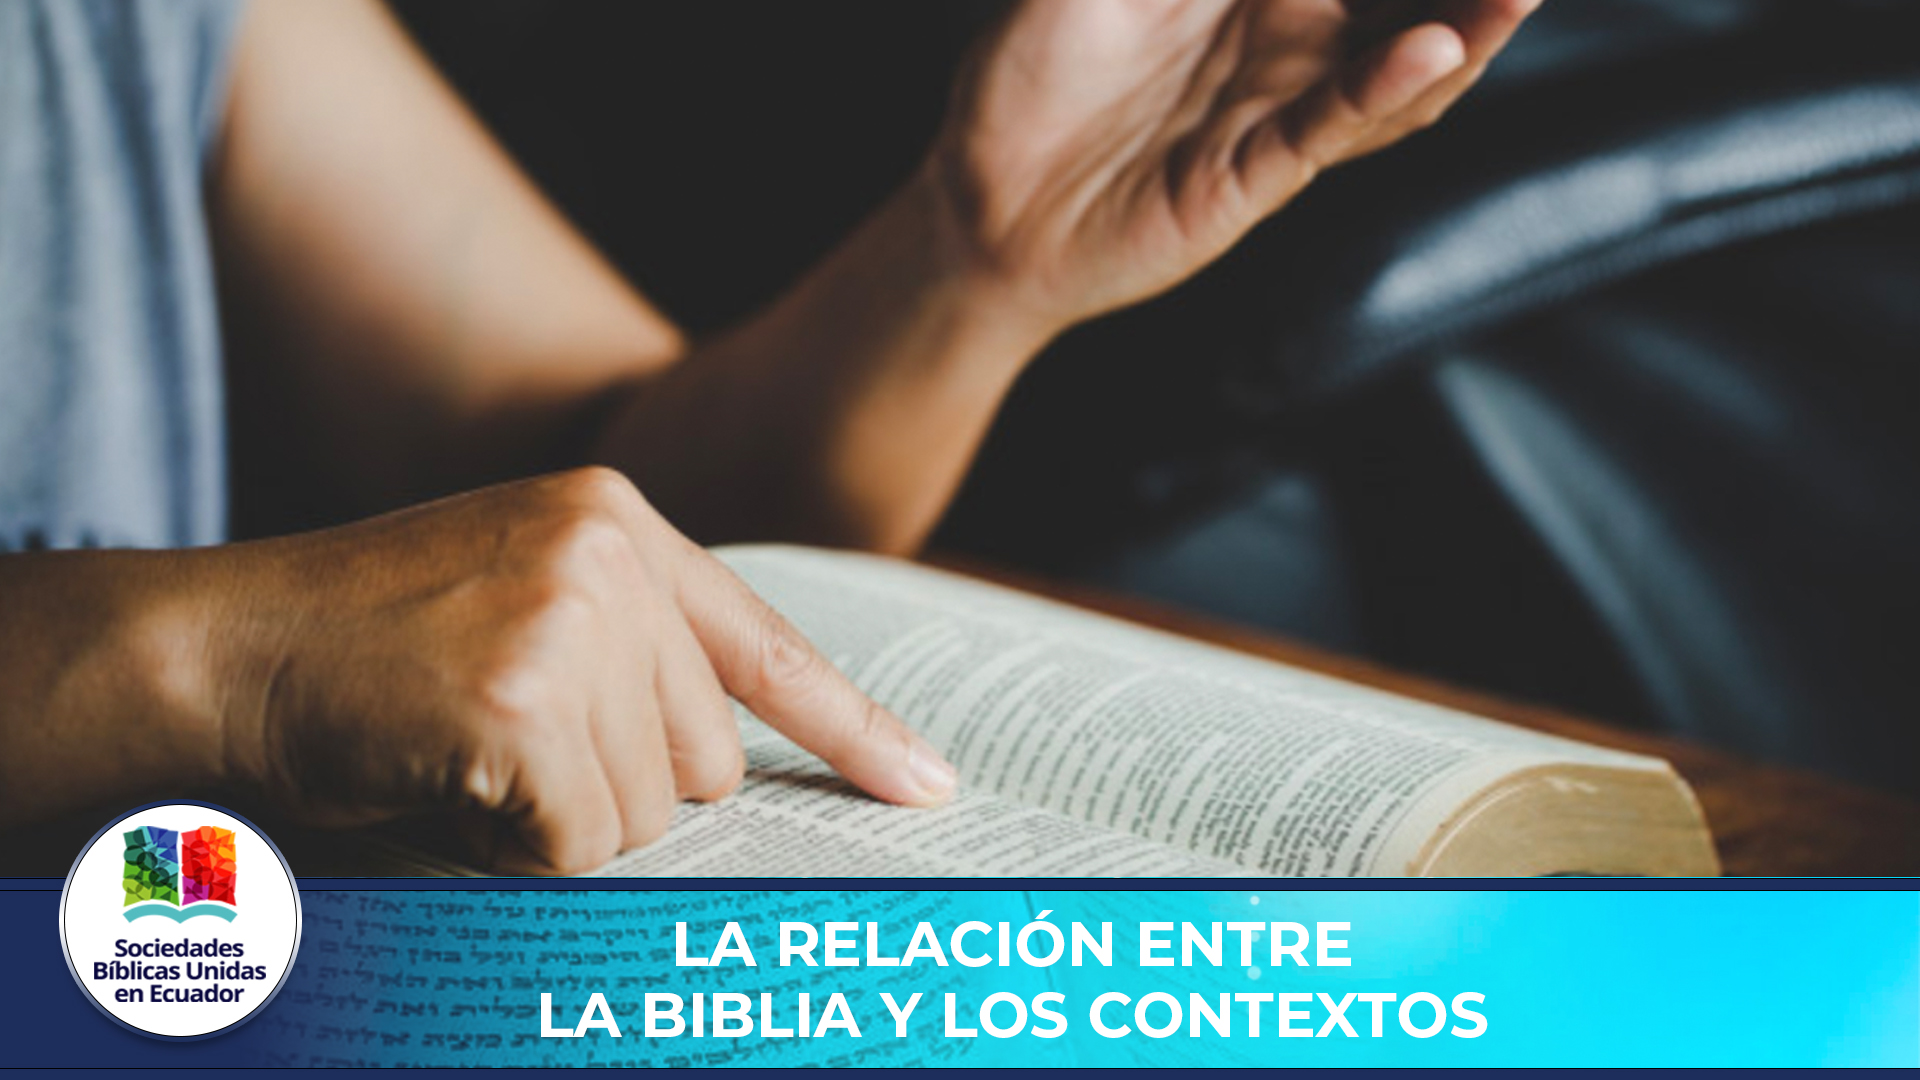 La Relacion entre la Biblia y los contextos